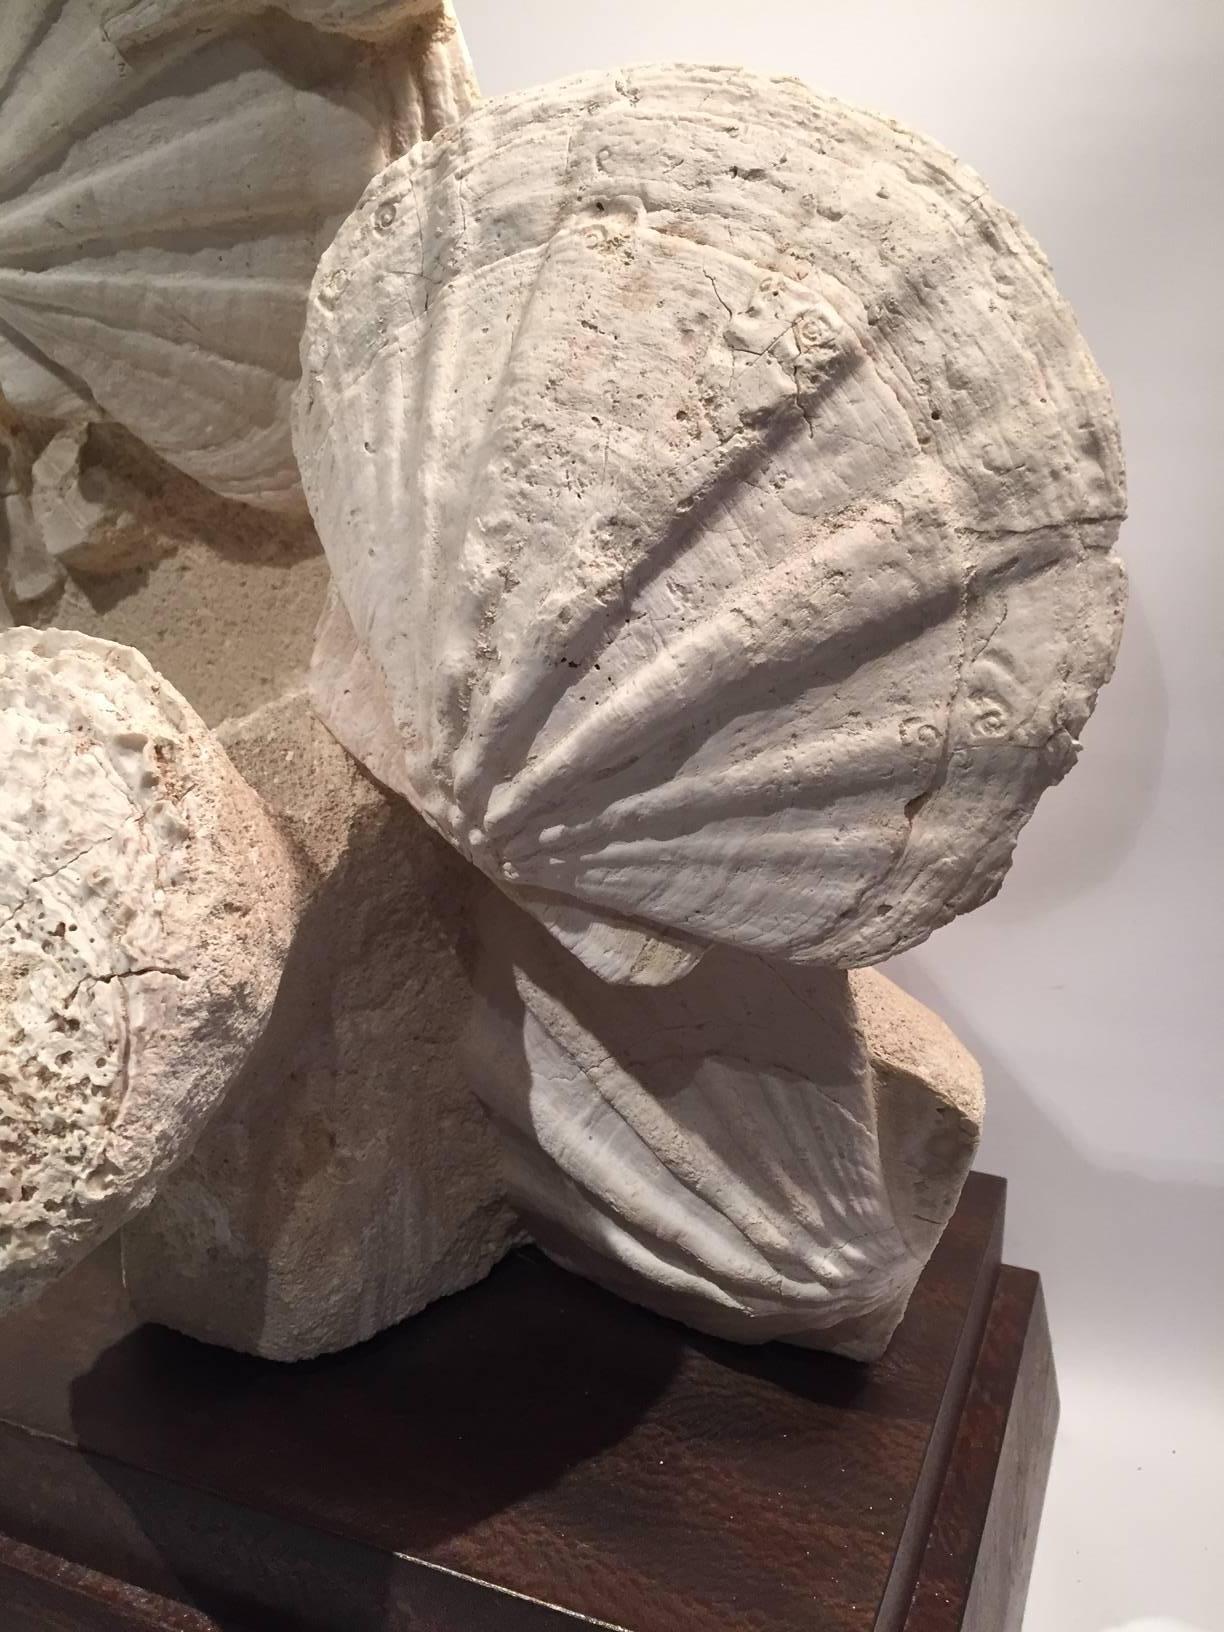 Großes montiertes prähistorisches Pektin-Fossil aus der Karbonzeit (Kalkstein)